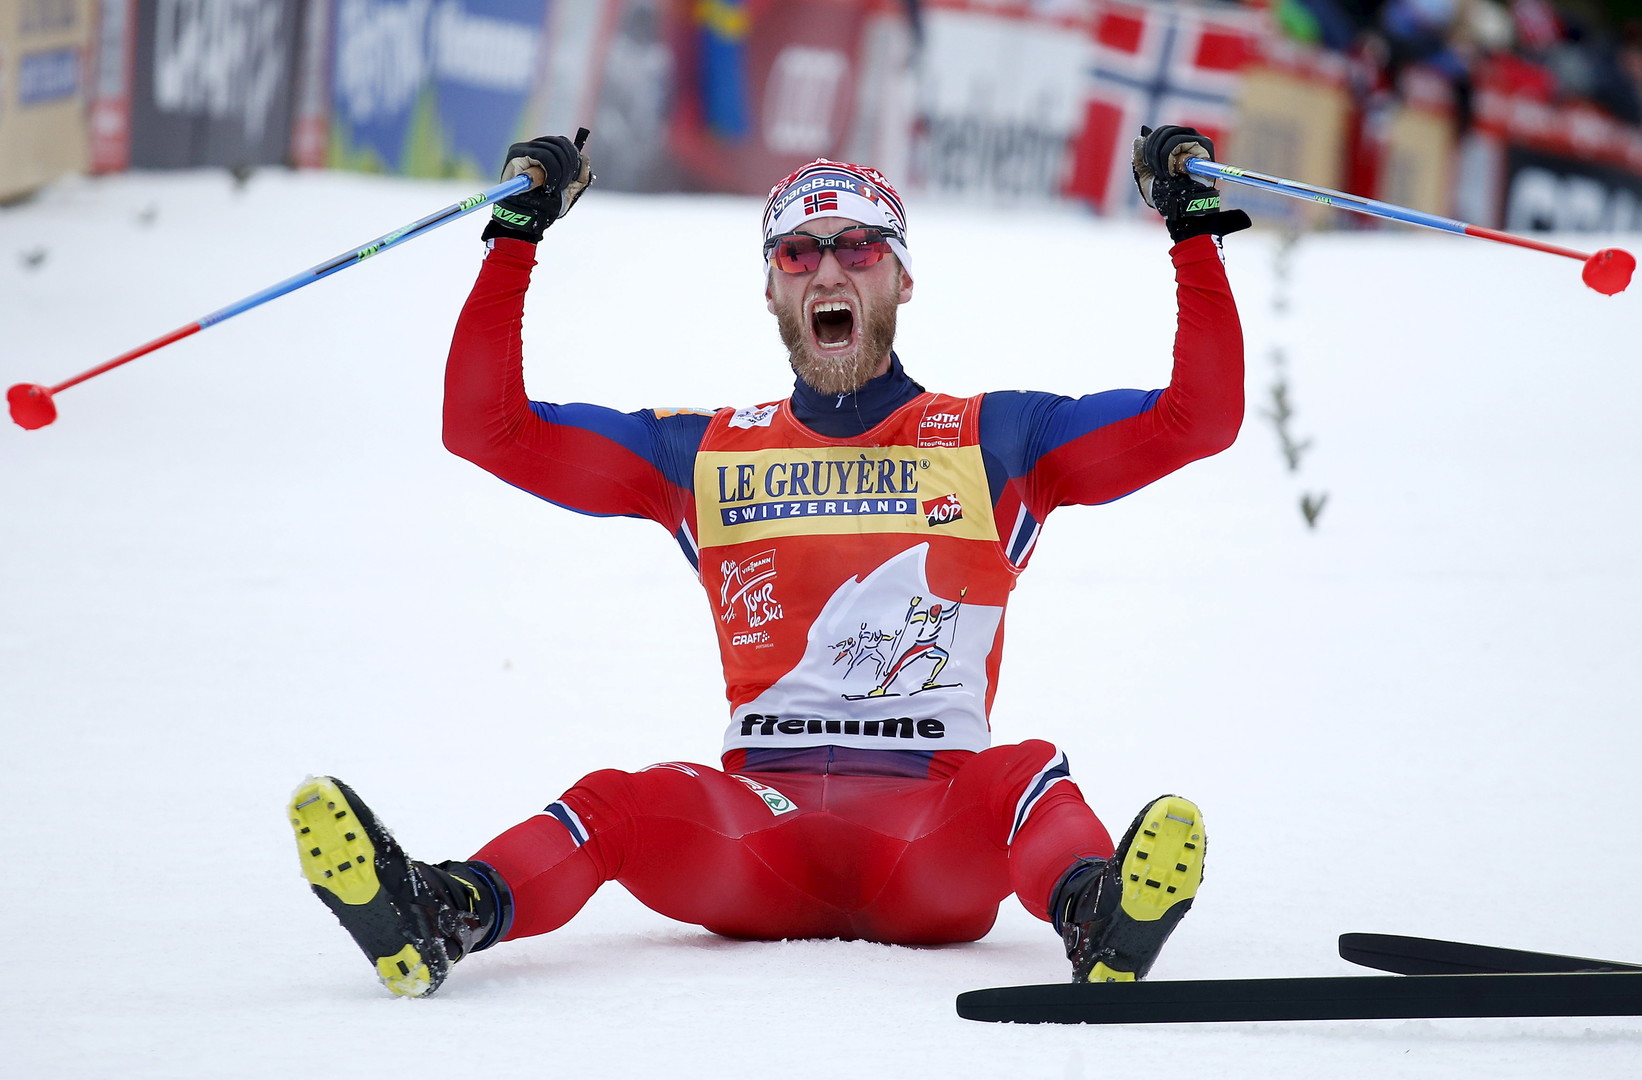  Допинг в законе: чем норвежские лыжники с астмой лучше российских легкоатлетов - фото 2